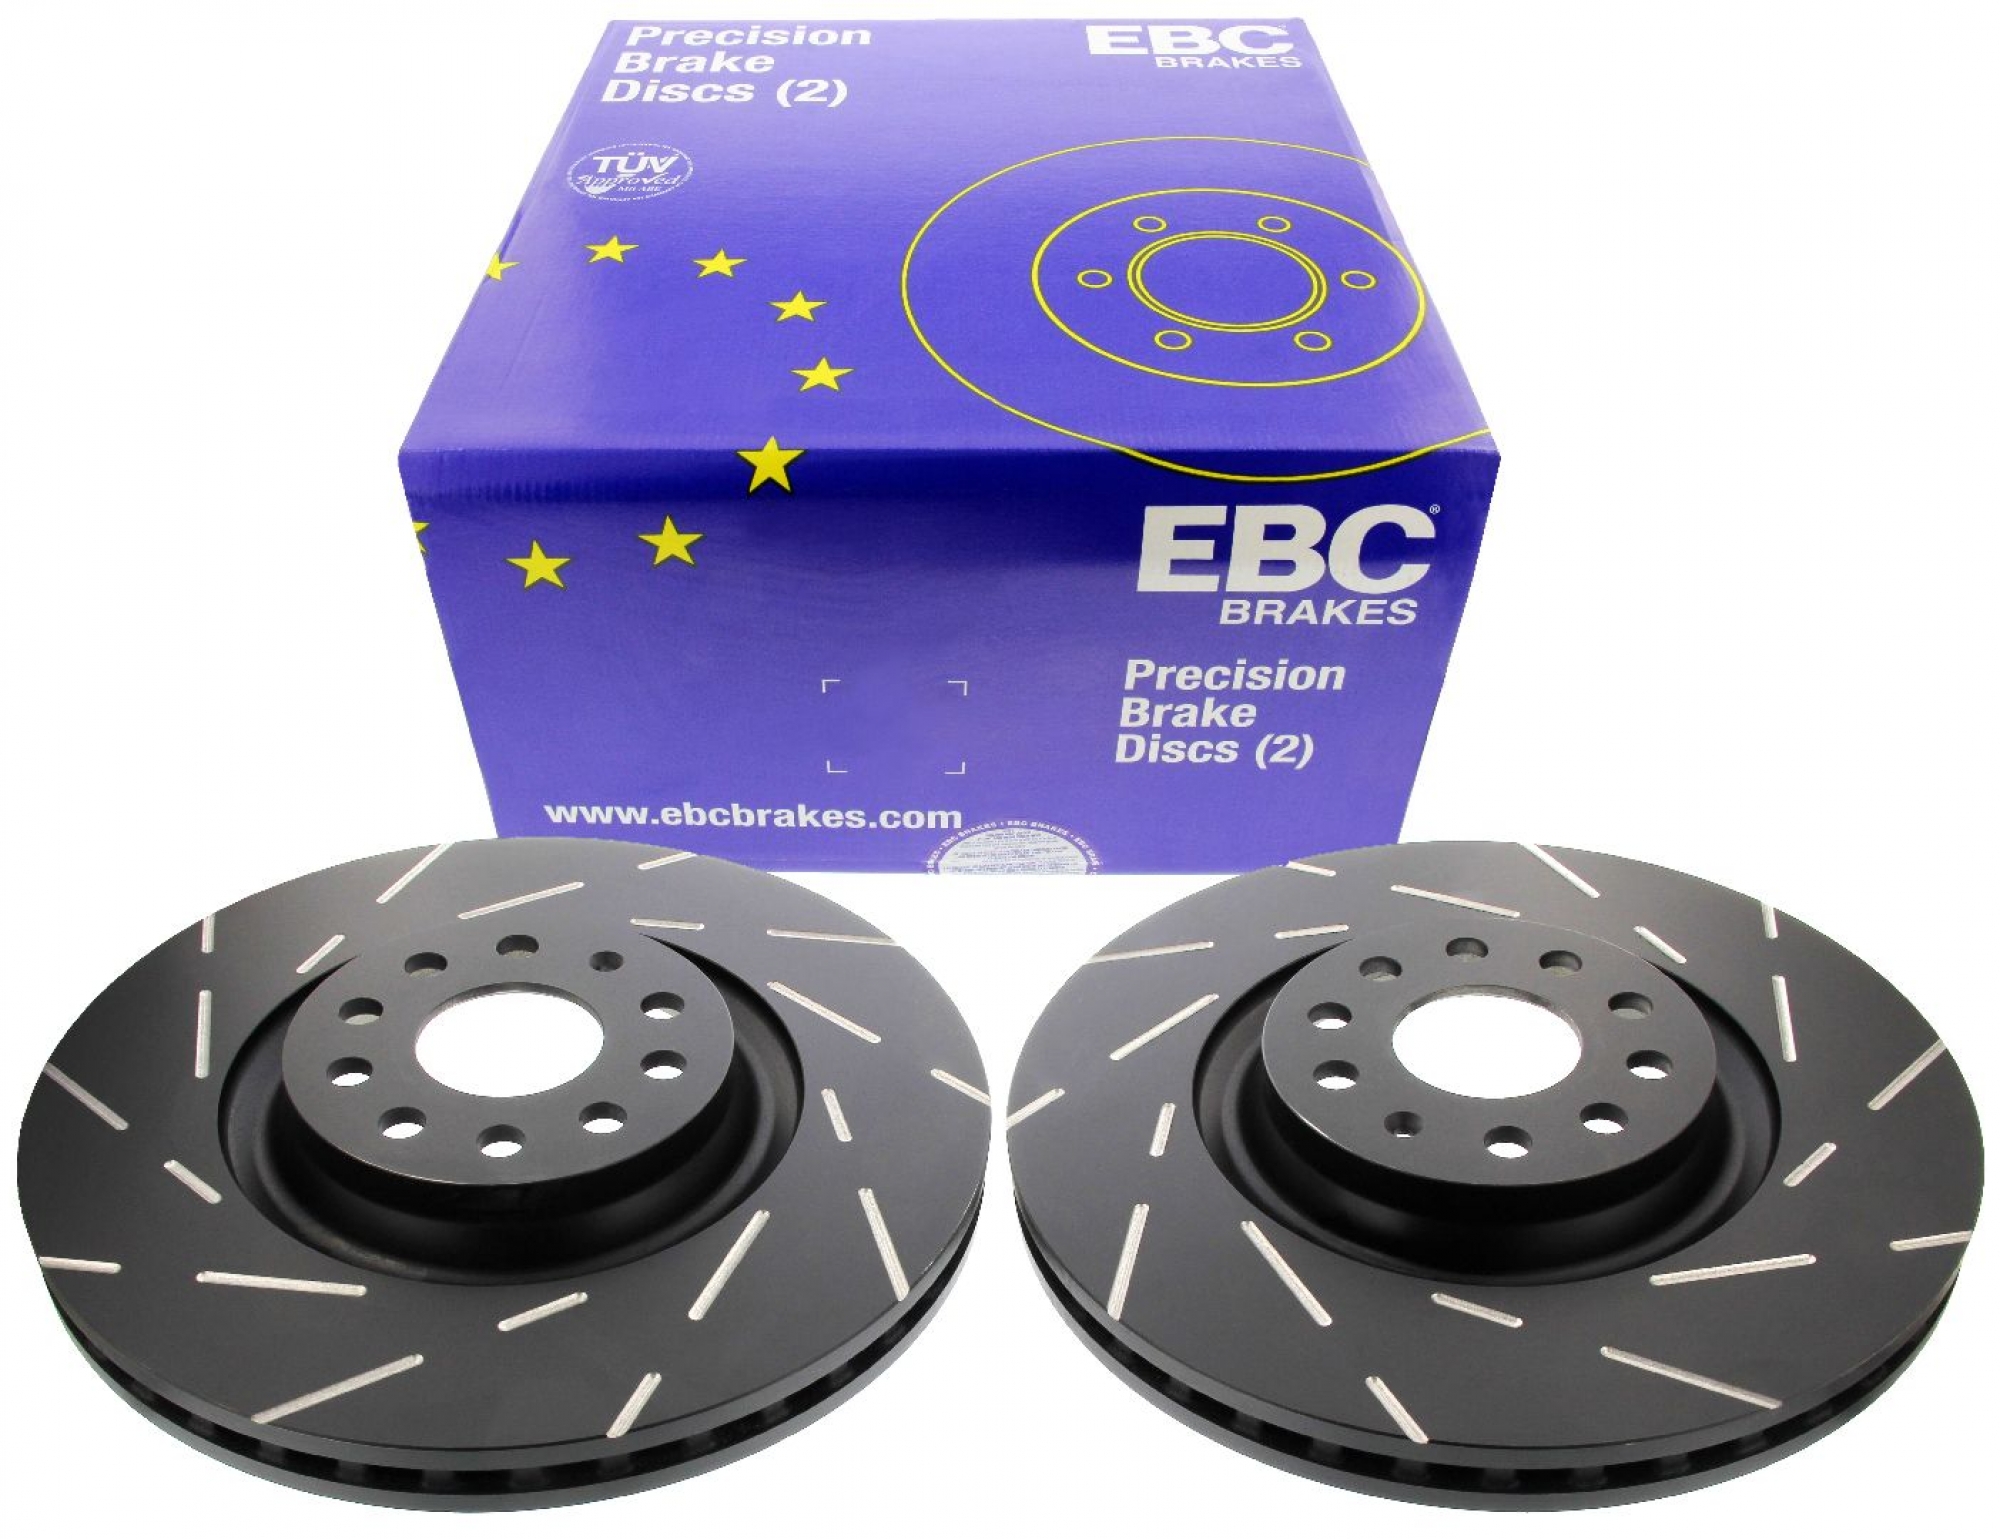 EBC-Bremsscheiben, Black Dash Disc (2-teilig), VA, Audi, Seat, Skoda, VW